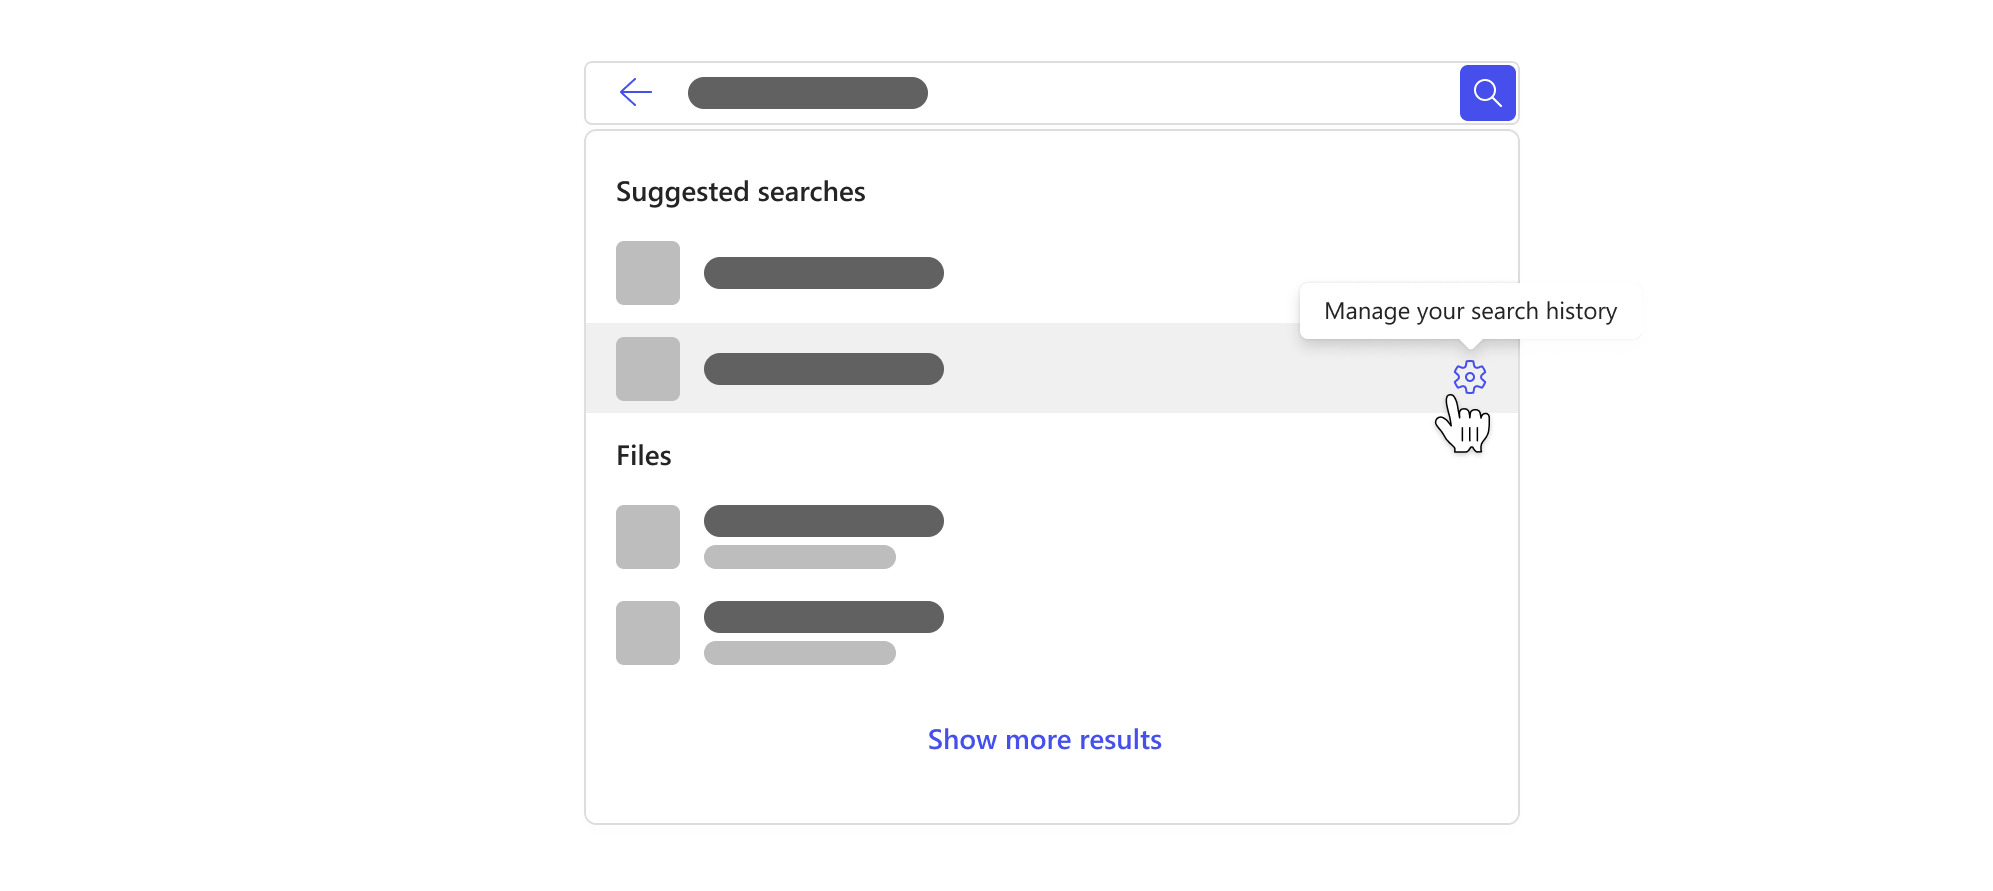 Hộp tìm kiếm với menu thả xuống tô sáng các tìm kiếm được đề xuất dựa trên lịch sử tìm kiếm của bạn và nút để quản lý lịch sử tìm kiếm của bạn.